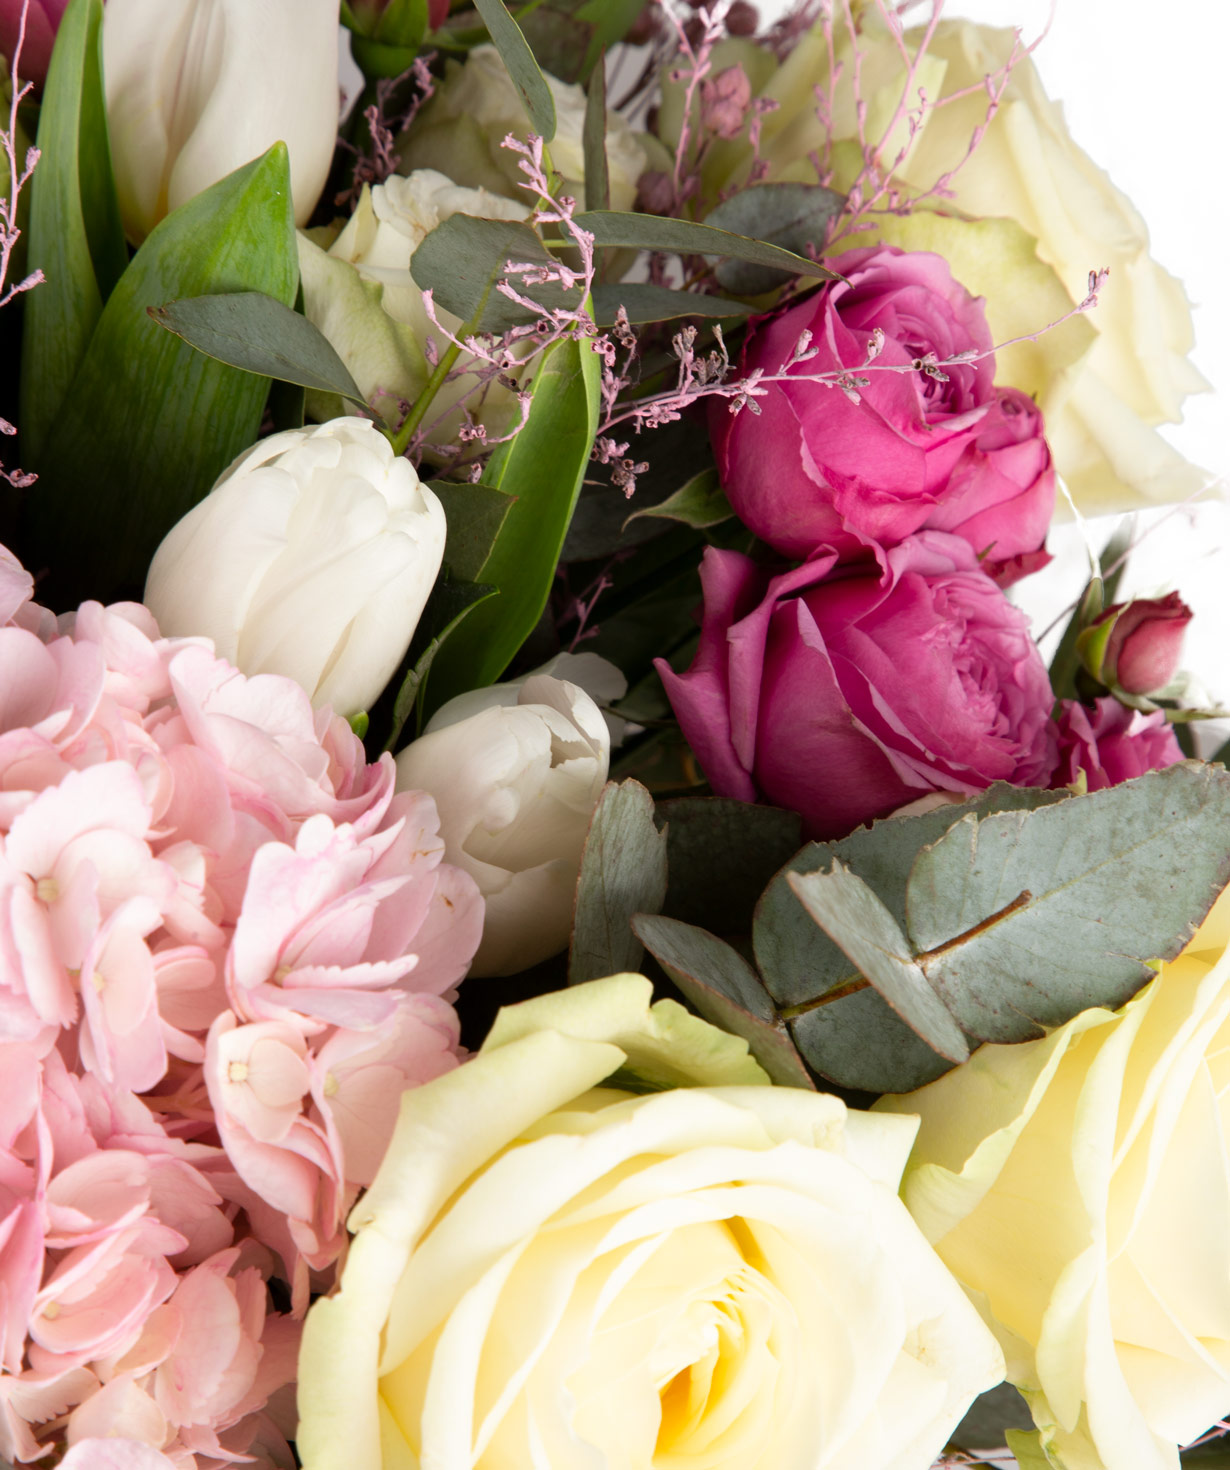 Букет ''Мало'' с кустовыми розами и тюльпанами